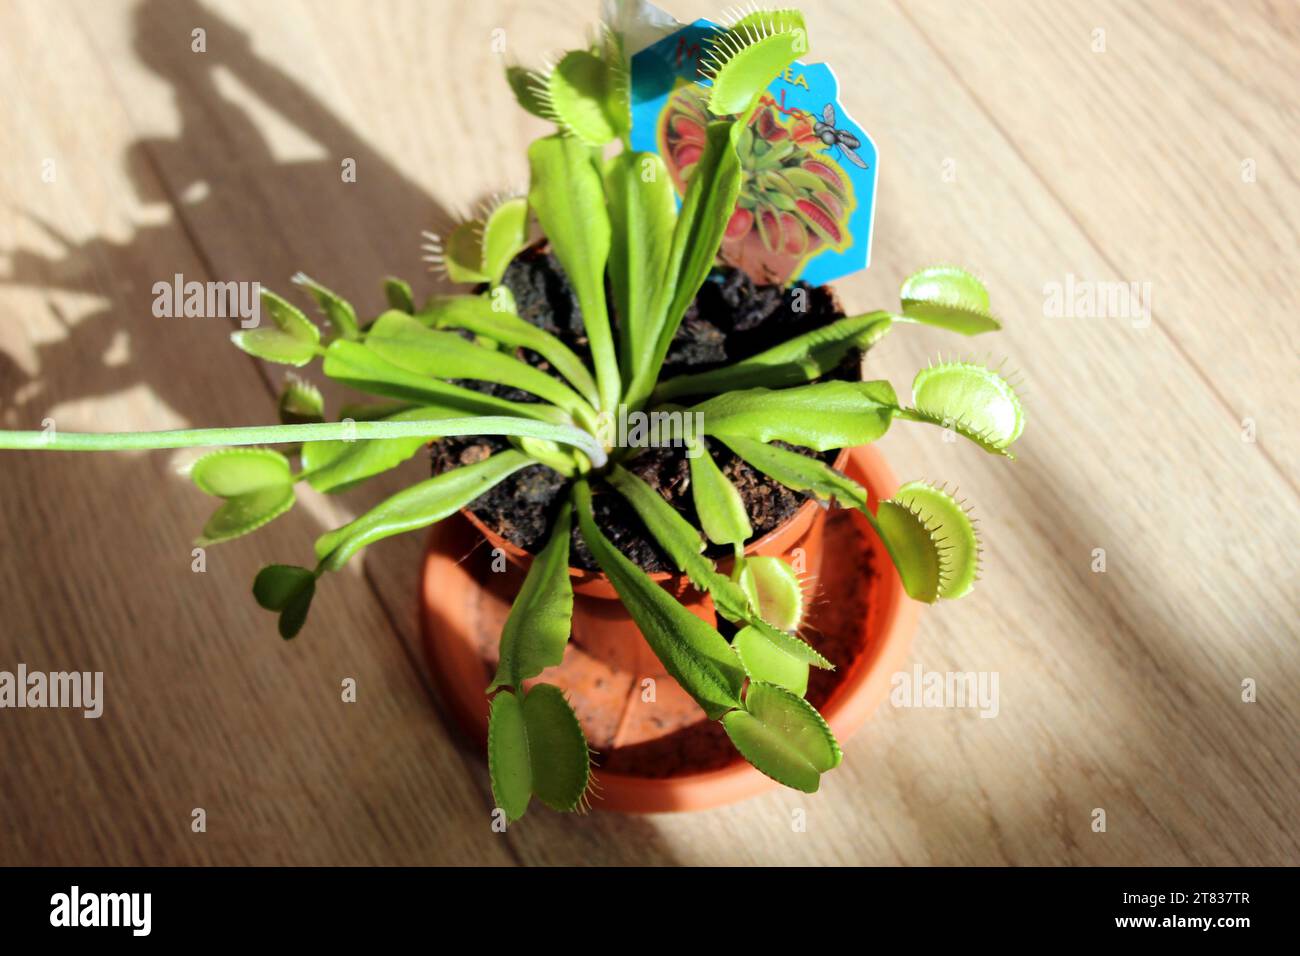 Dionaea Muscipula pianta carnivora in fiore in un vaso Foto Stock